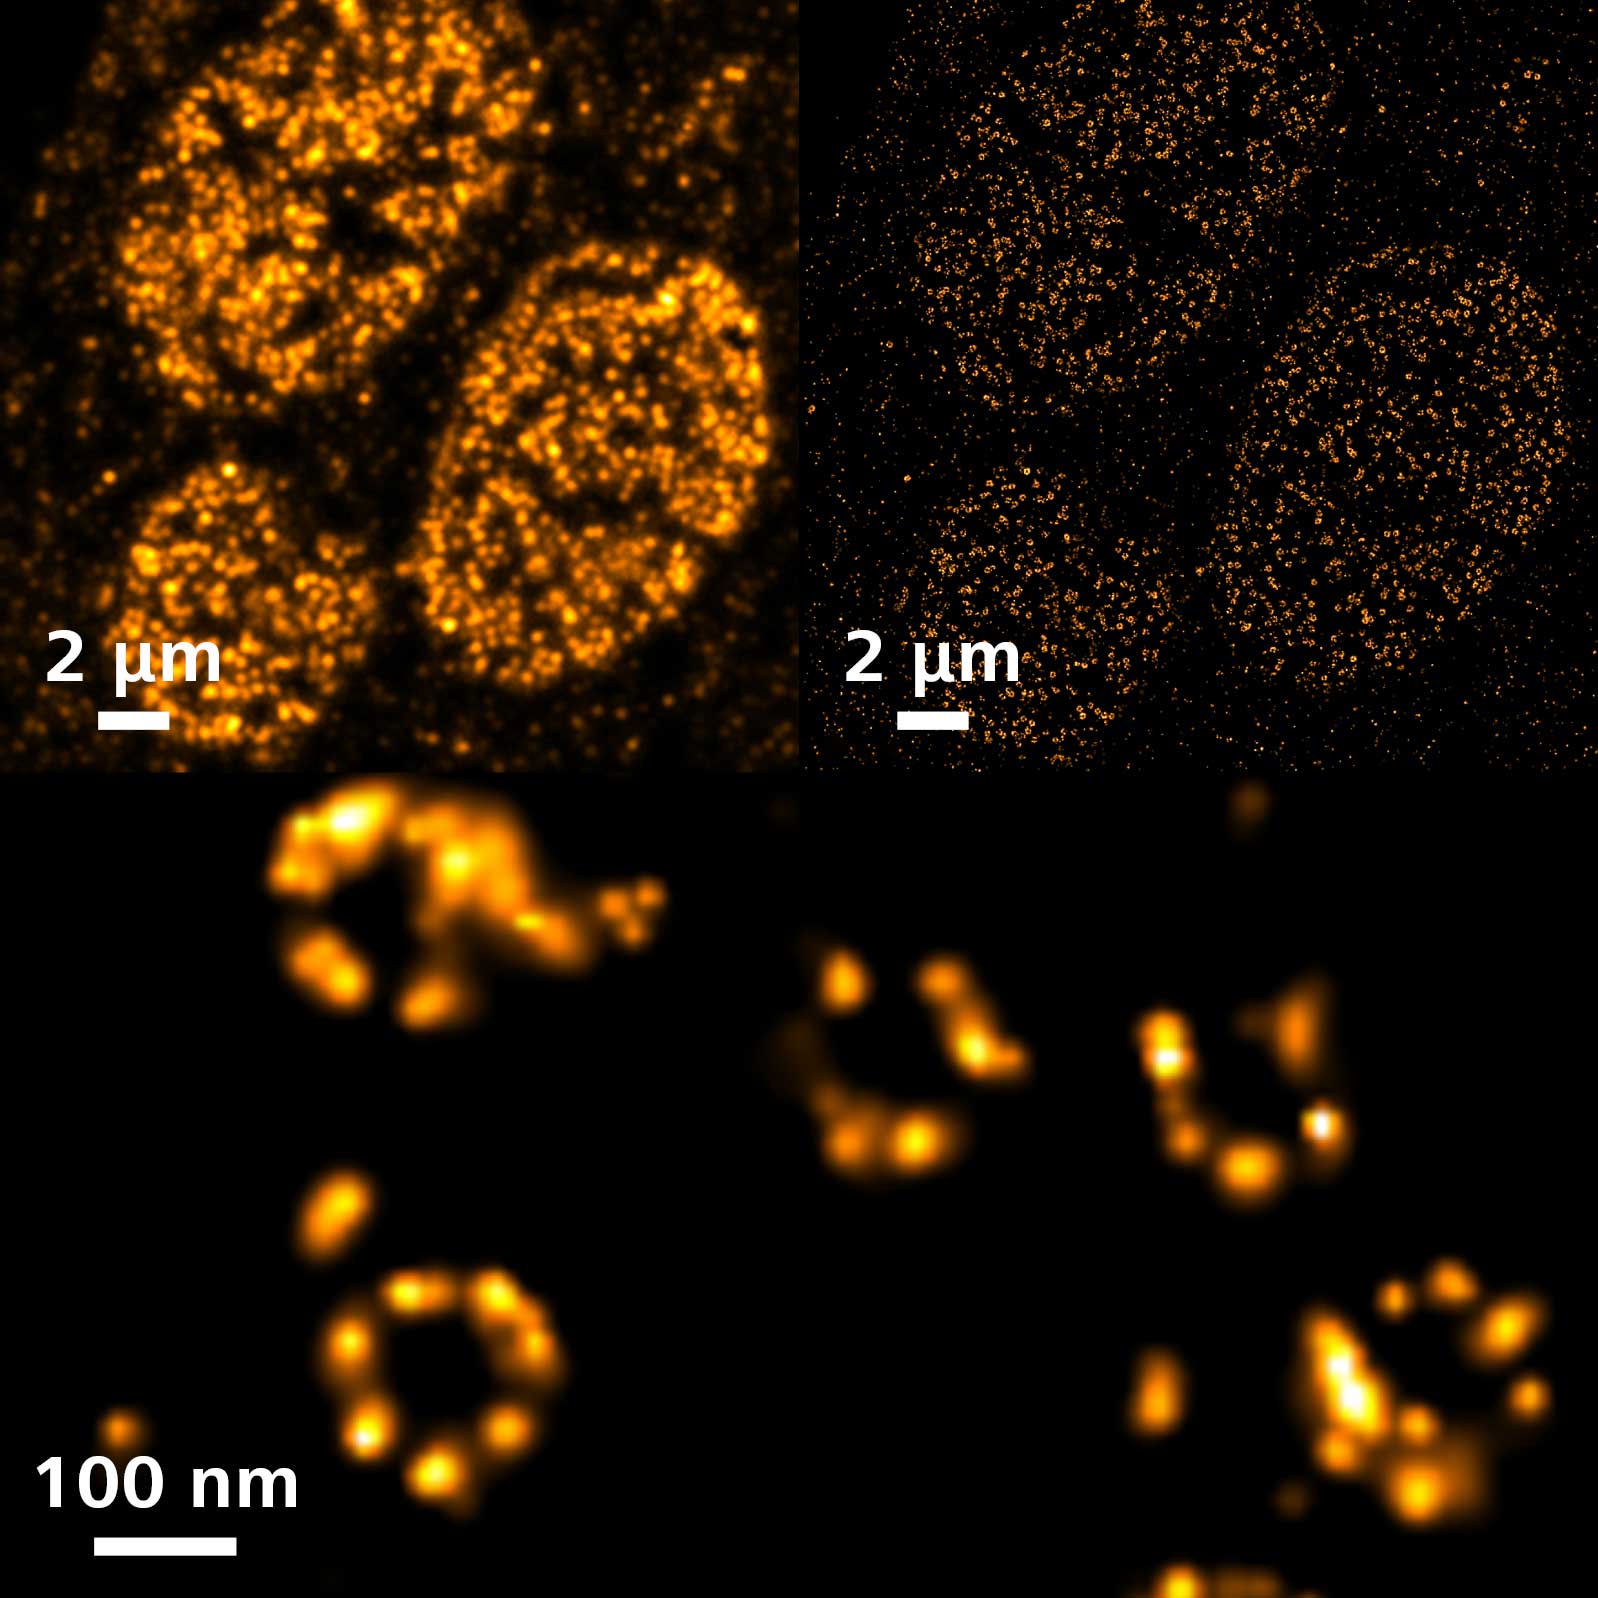 アフリカツメガエル腎臓由来A6細胞の8回対称位置にある核膜孔複合体。Alexa Fluor 647で標識されたGp210。